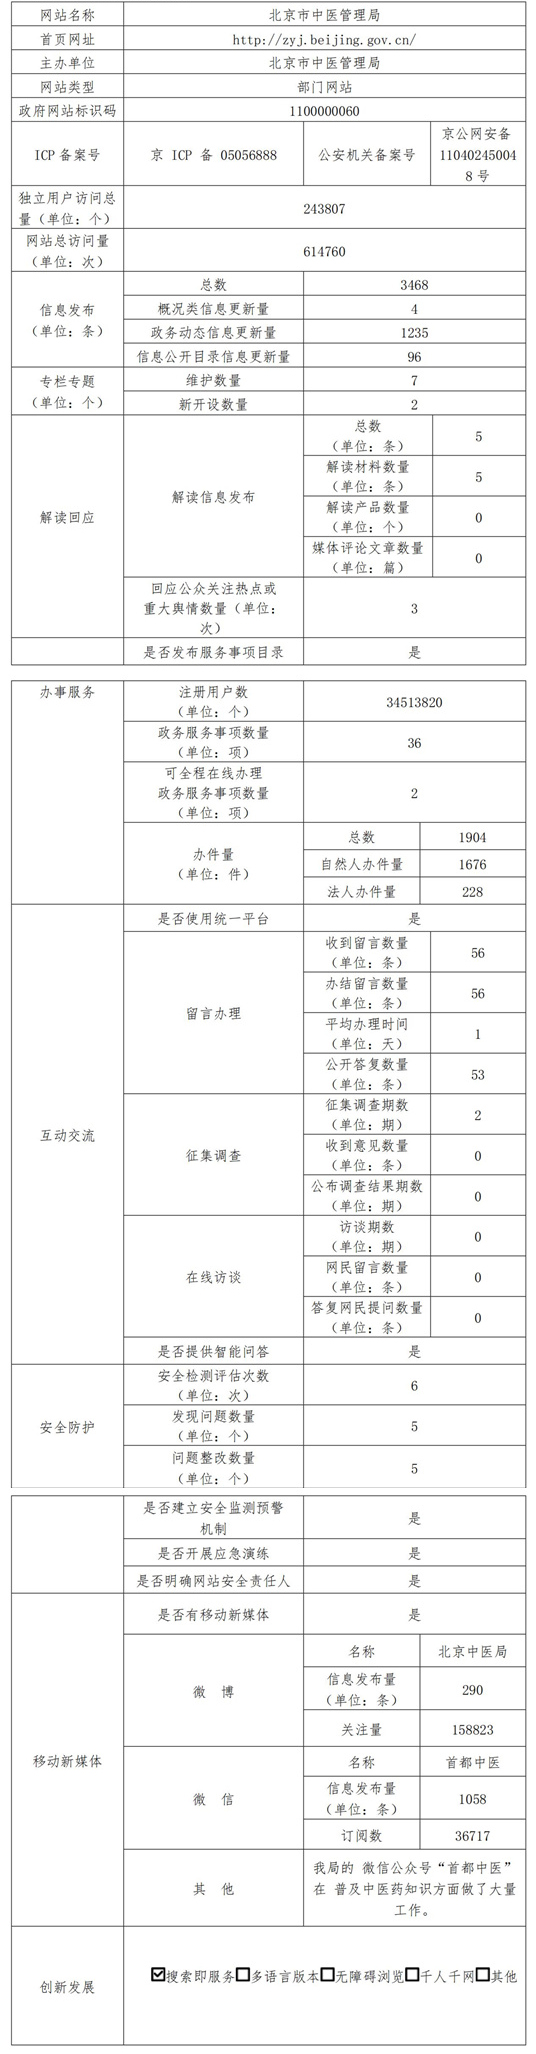 北京市中醫管理局2021年政府網站年度工作報表